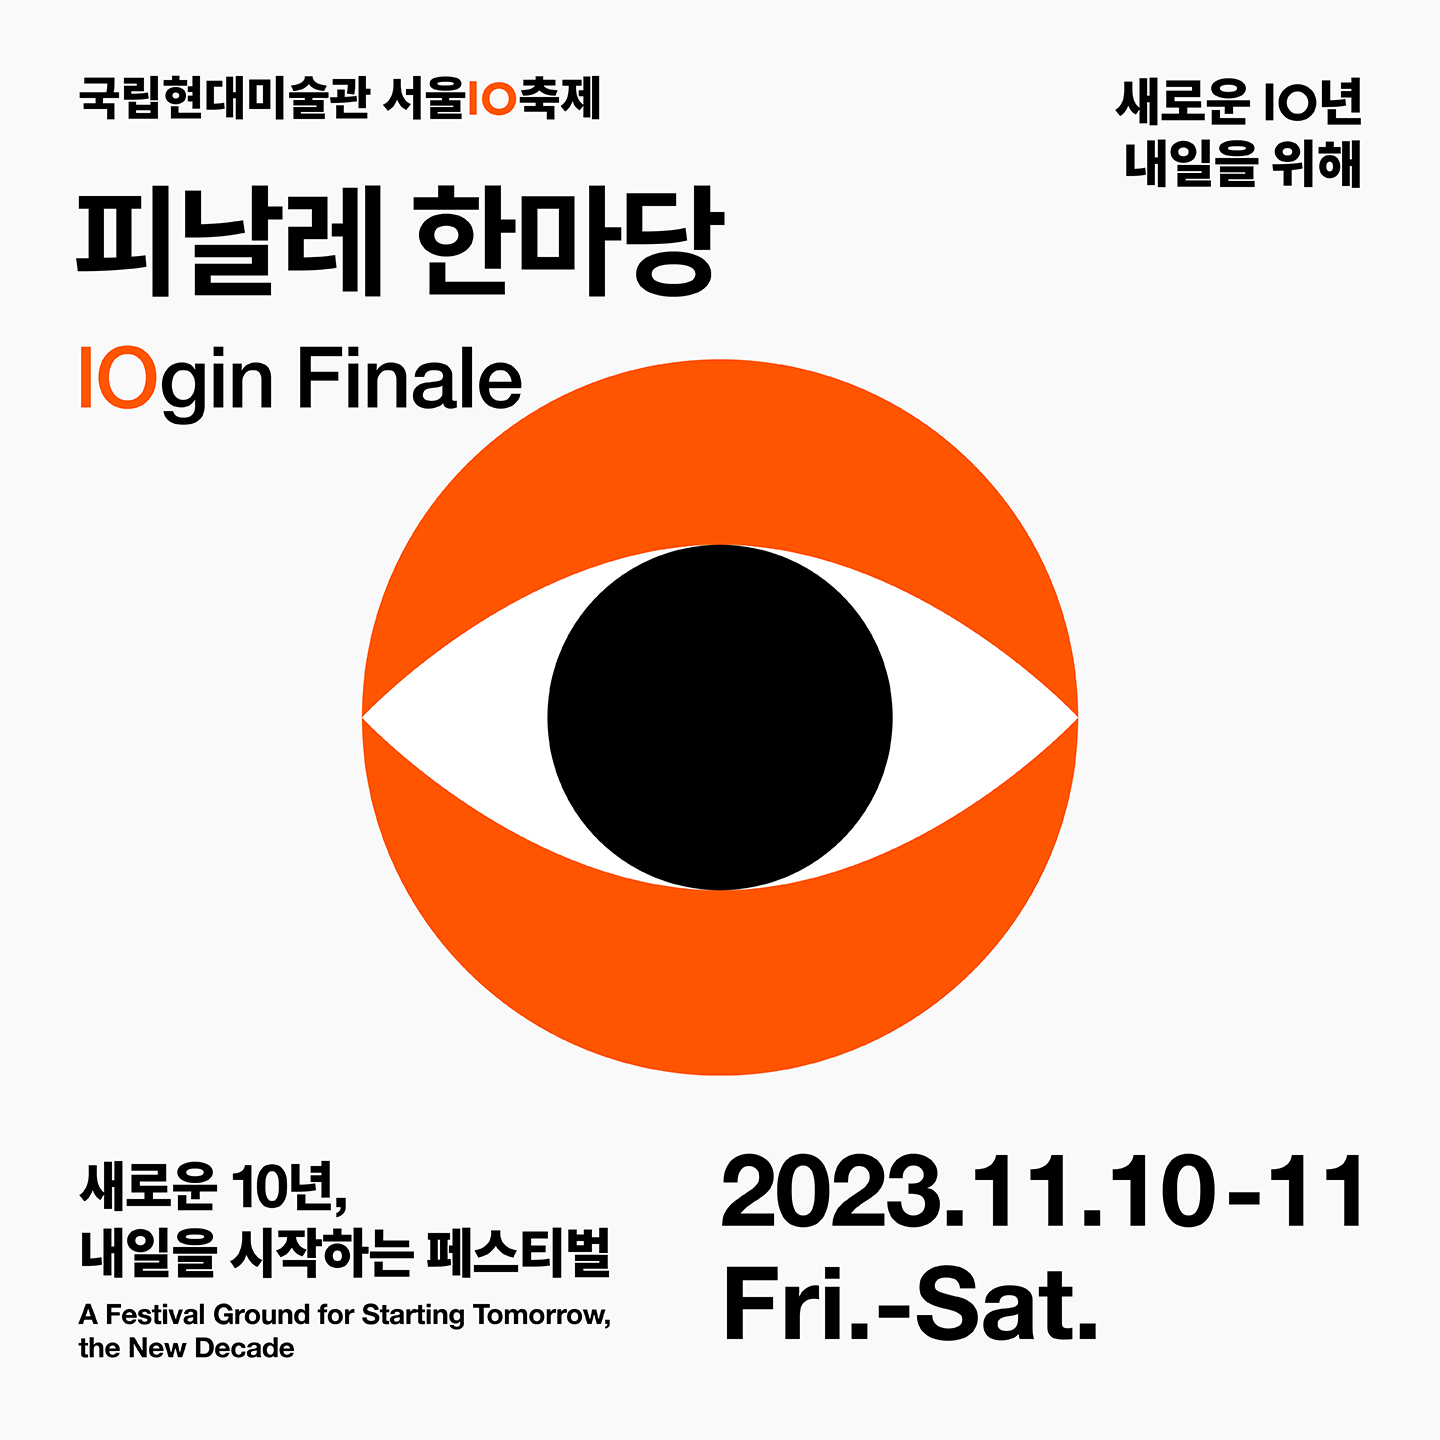 2023 국립현대미술관 서울10 축제: 피날레 한마당